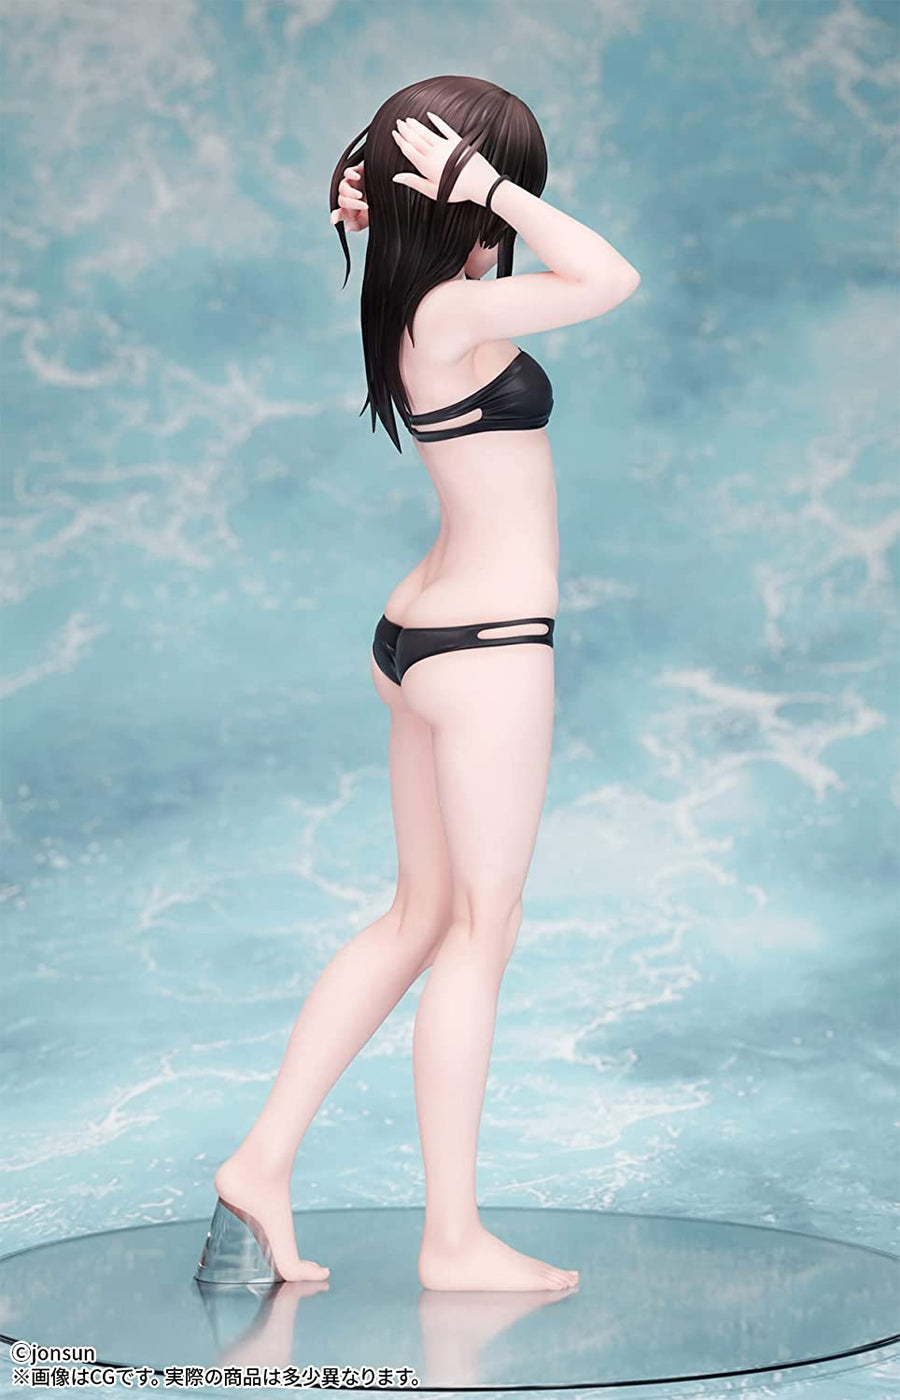 Original Character - Shiori - 1/6 - Swimsuit Ver. (B'full)